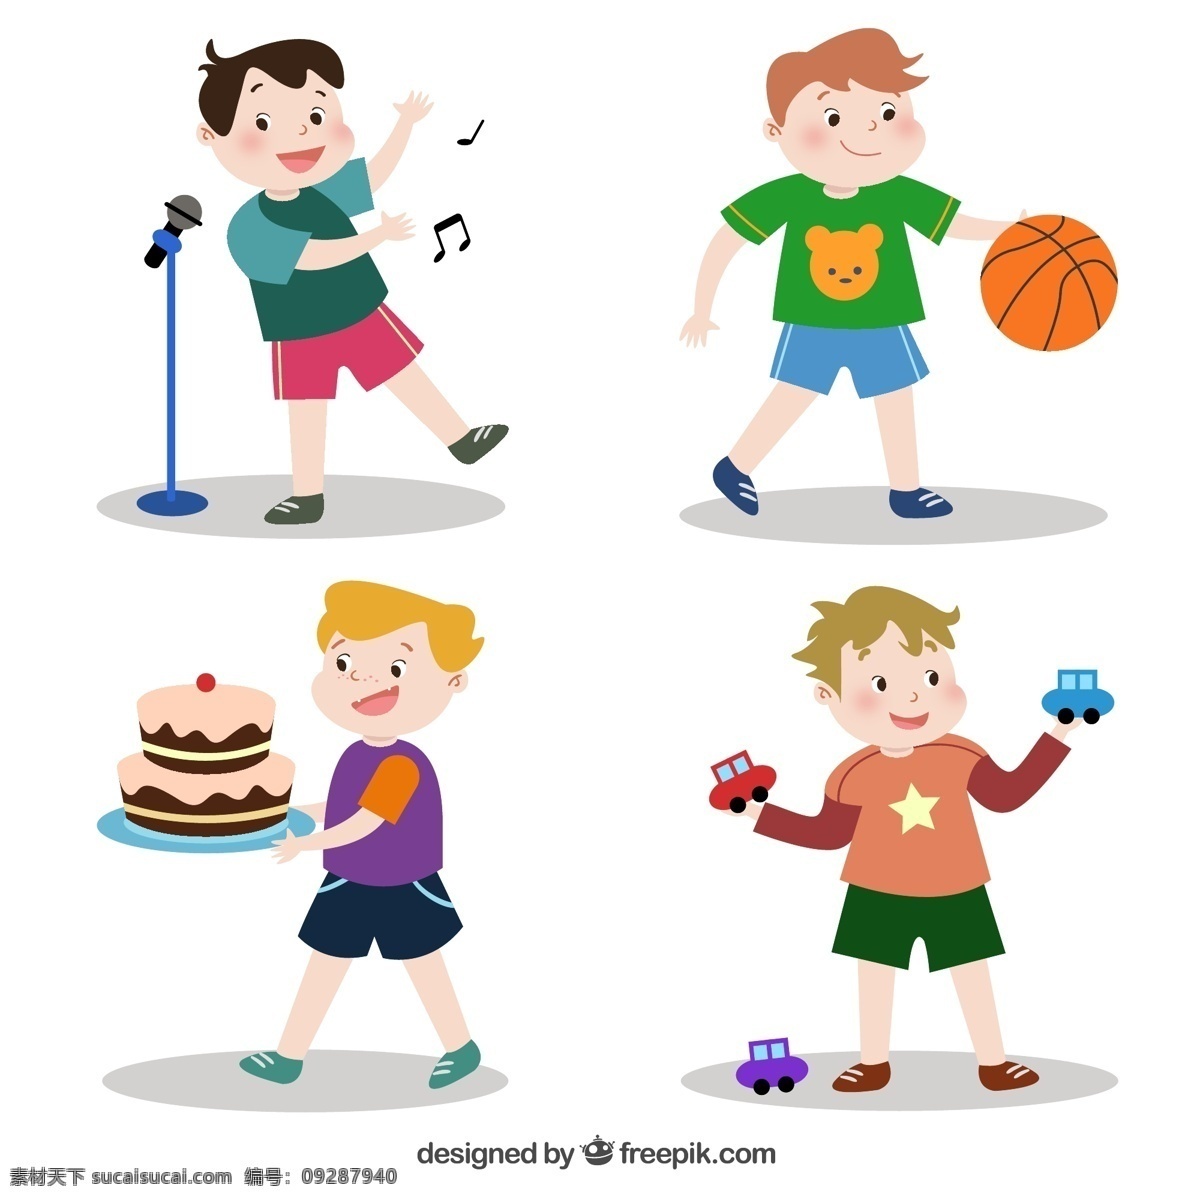 款 可爱 运动 男孩 唱歌 音符 音乐 话筒 篮球 蛋糕 车 玩具 人物 动漫动画 动漫人物